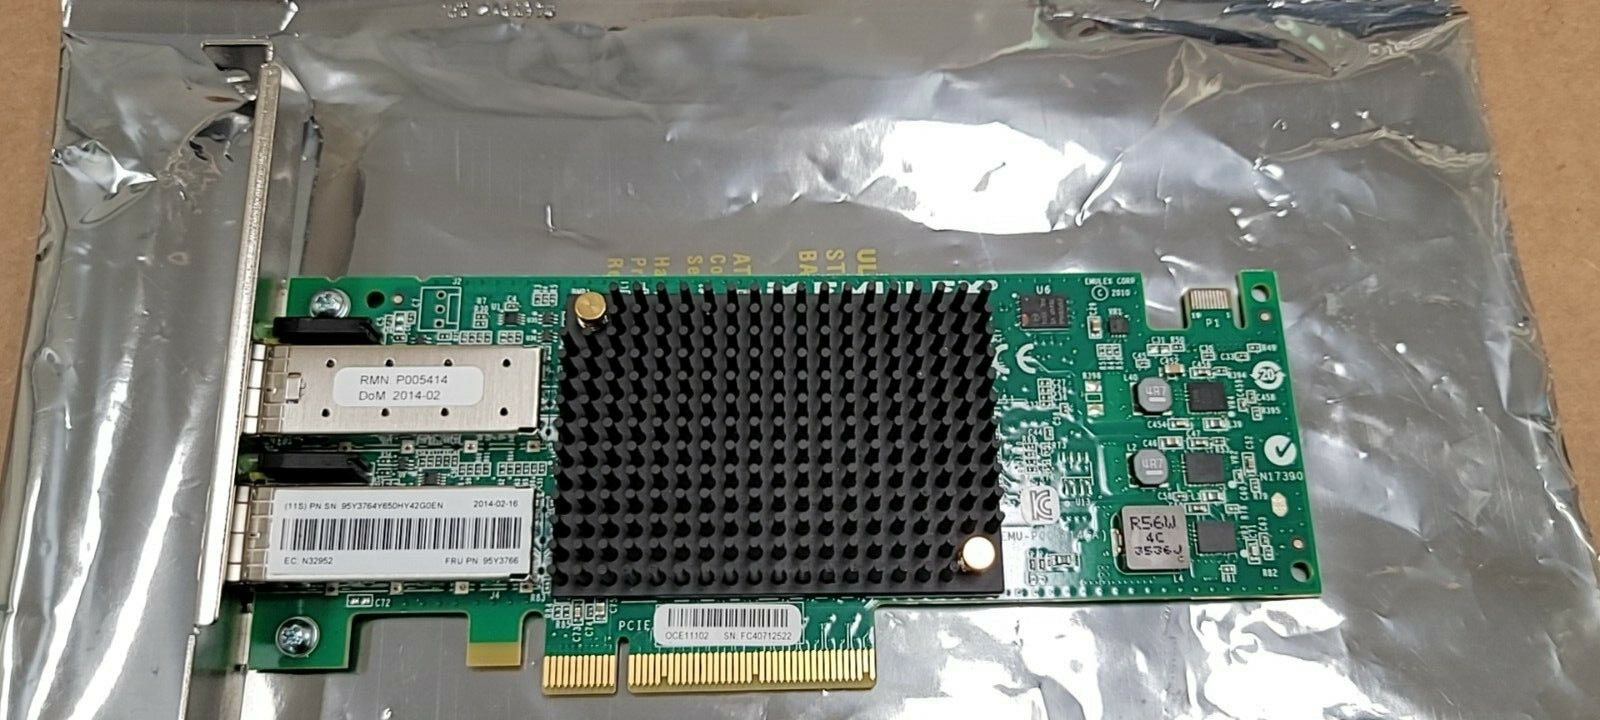 IBM 96Y3766 Emulex 2-Port 10GB SFP+ Ethernet Card PCI-e P005414 95Y3764